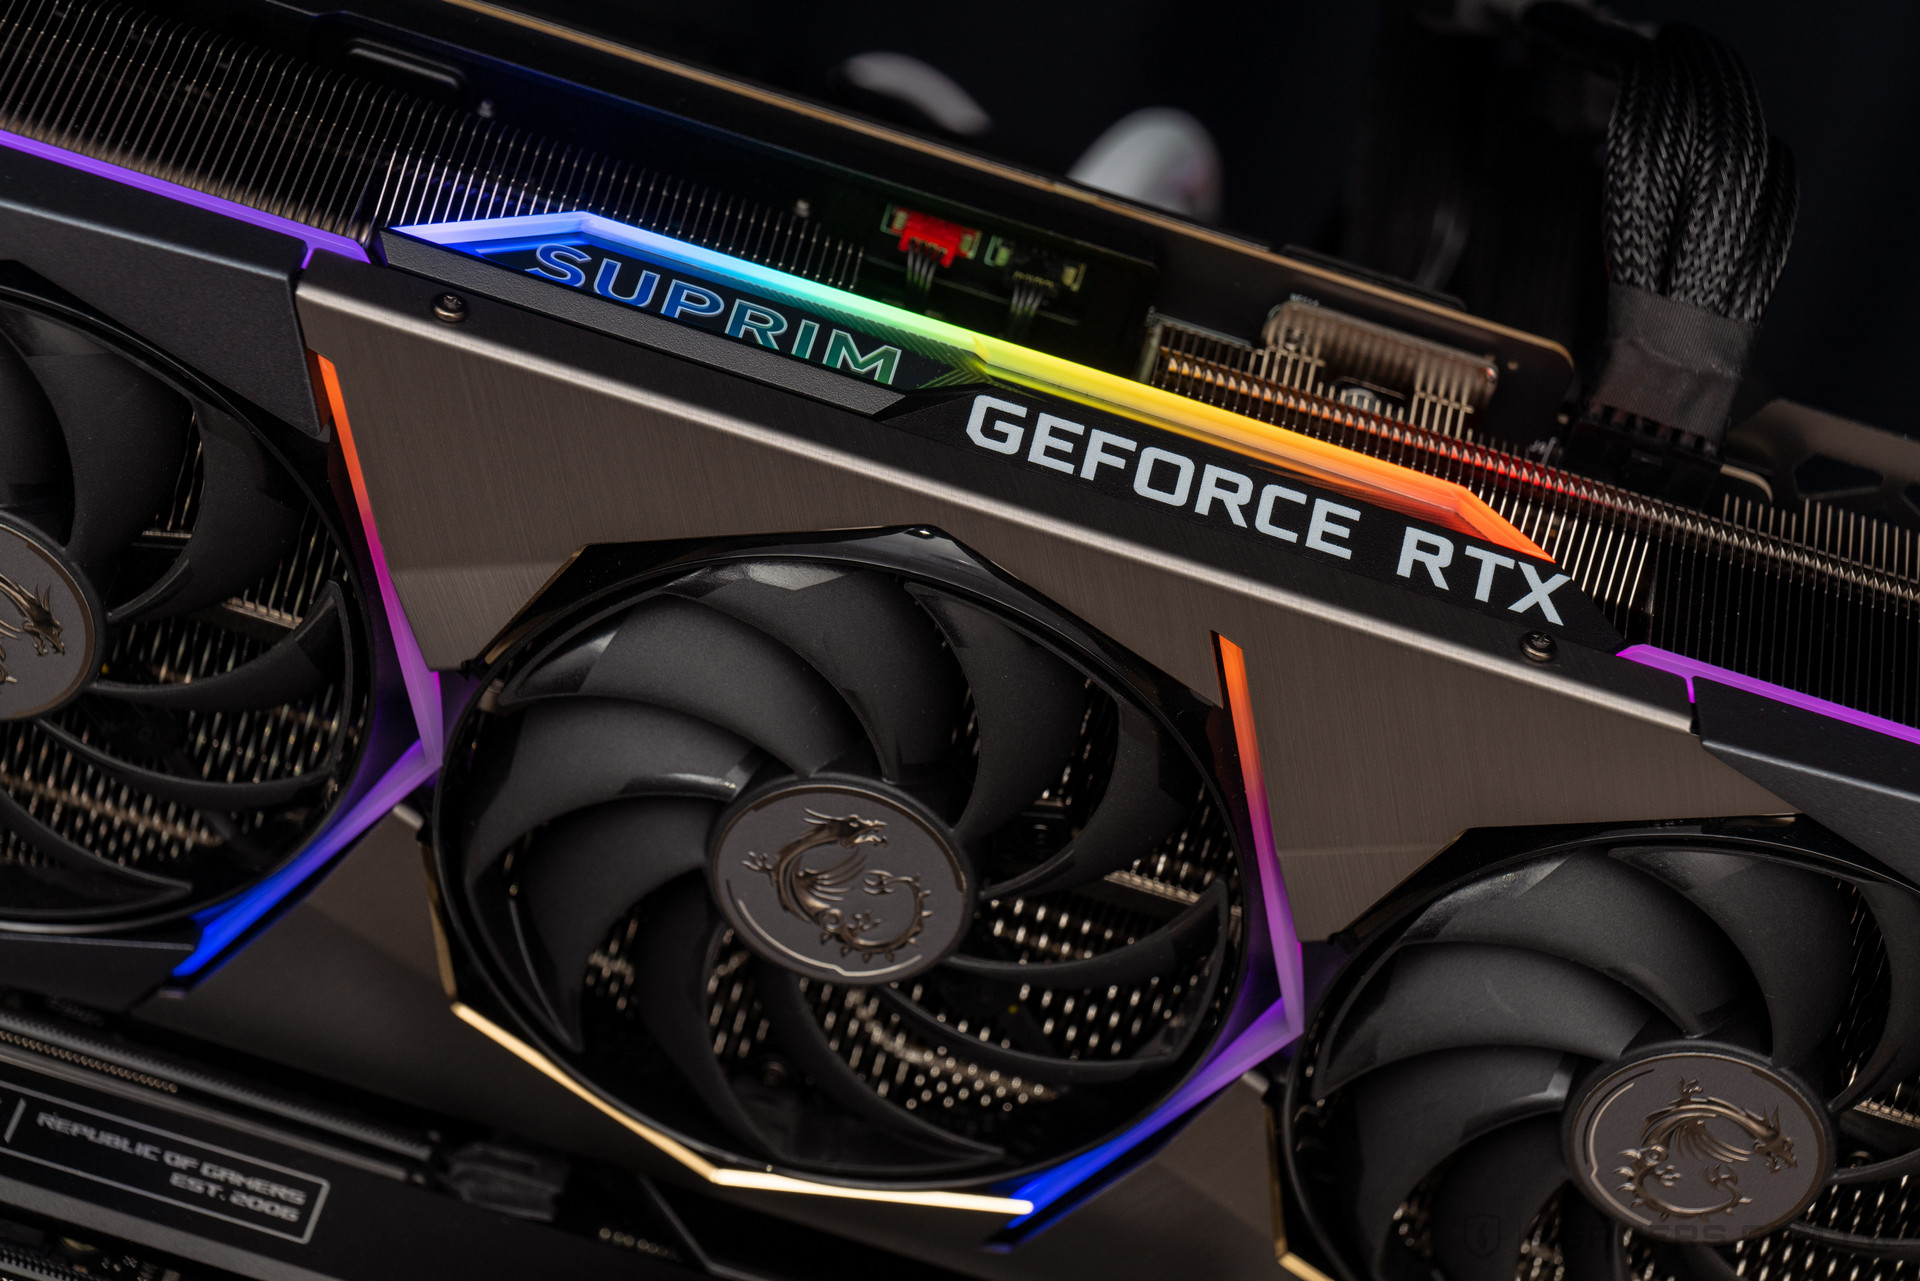 微星GeForce RTX 3090 Ti SUPRIM X評測：身兼專業繪圖卡的頂級遊戲顯卡